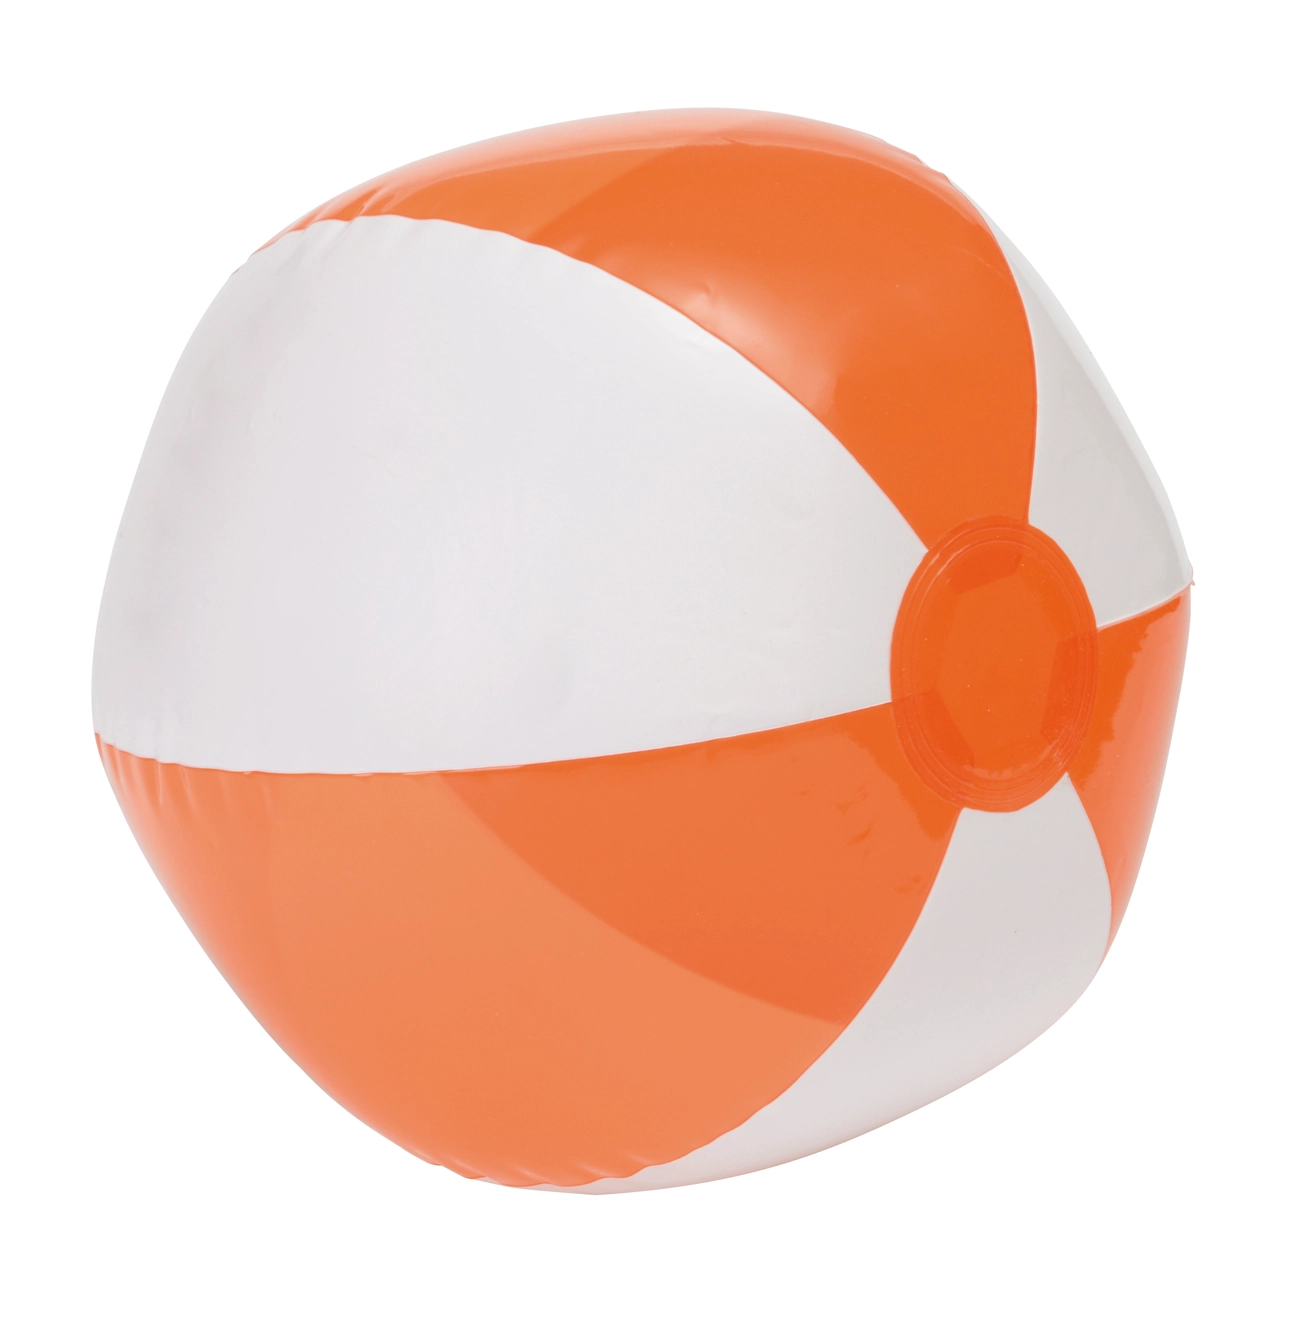 Piłka plażowa OCEAN, biały, transparentny pomarańczowy 56-0602147 biały